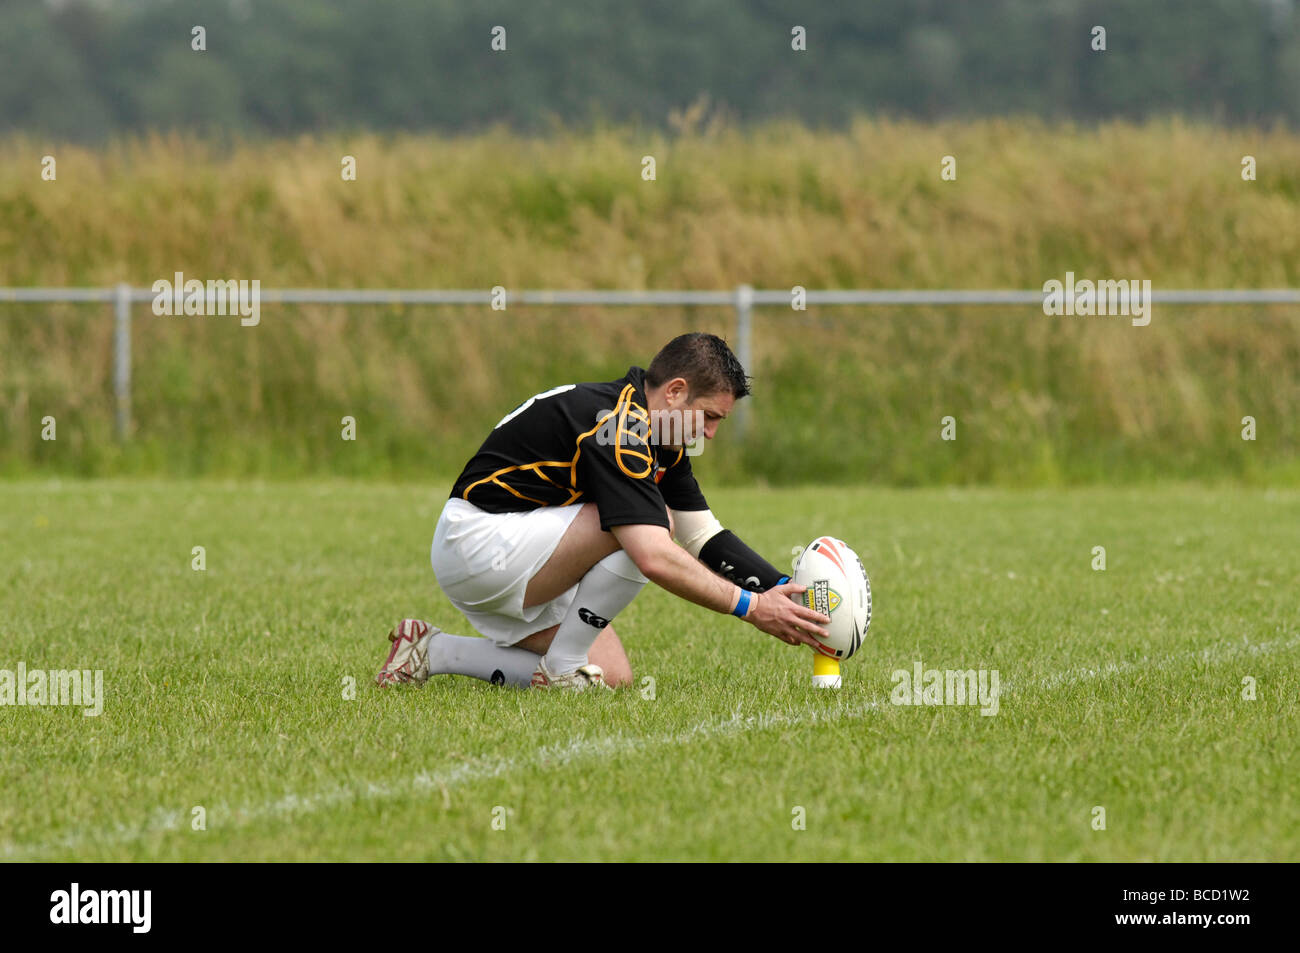 Joueur de rugby ball place soigneusement avant de tenter une conversion Banque D'Images